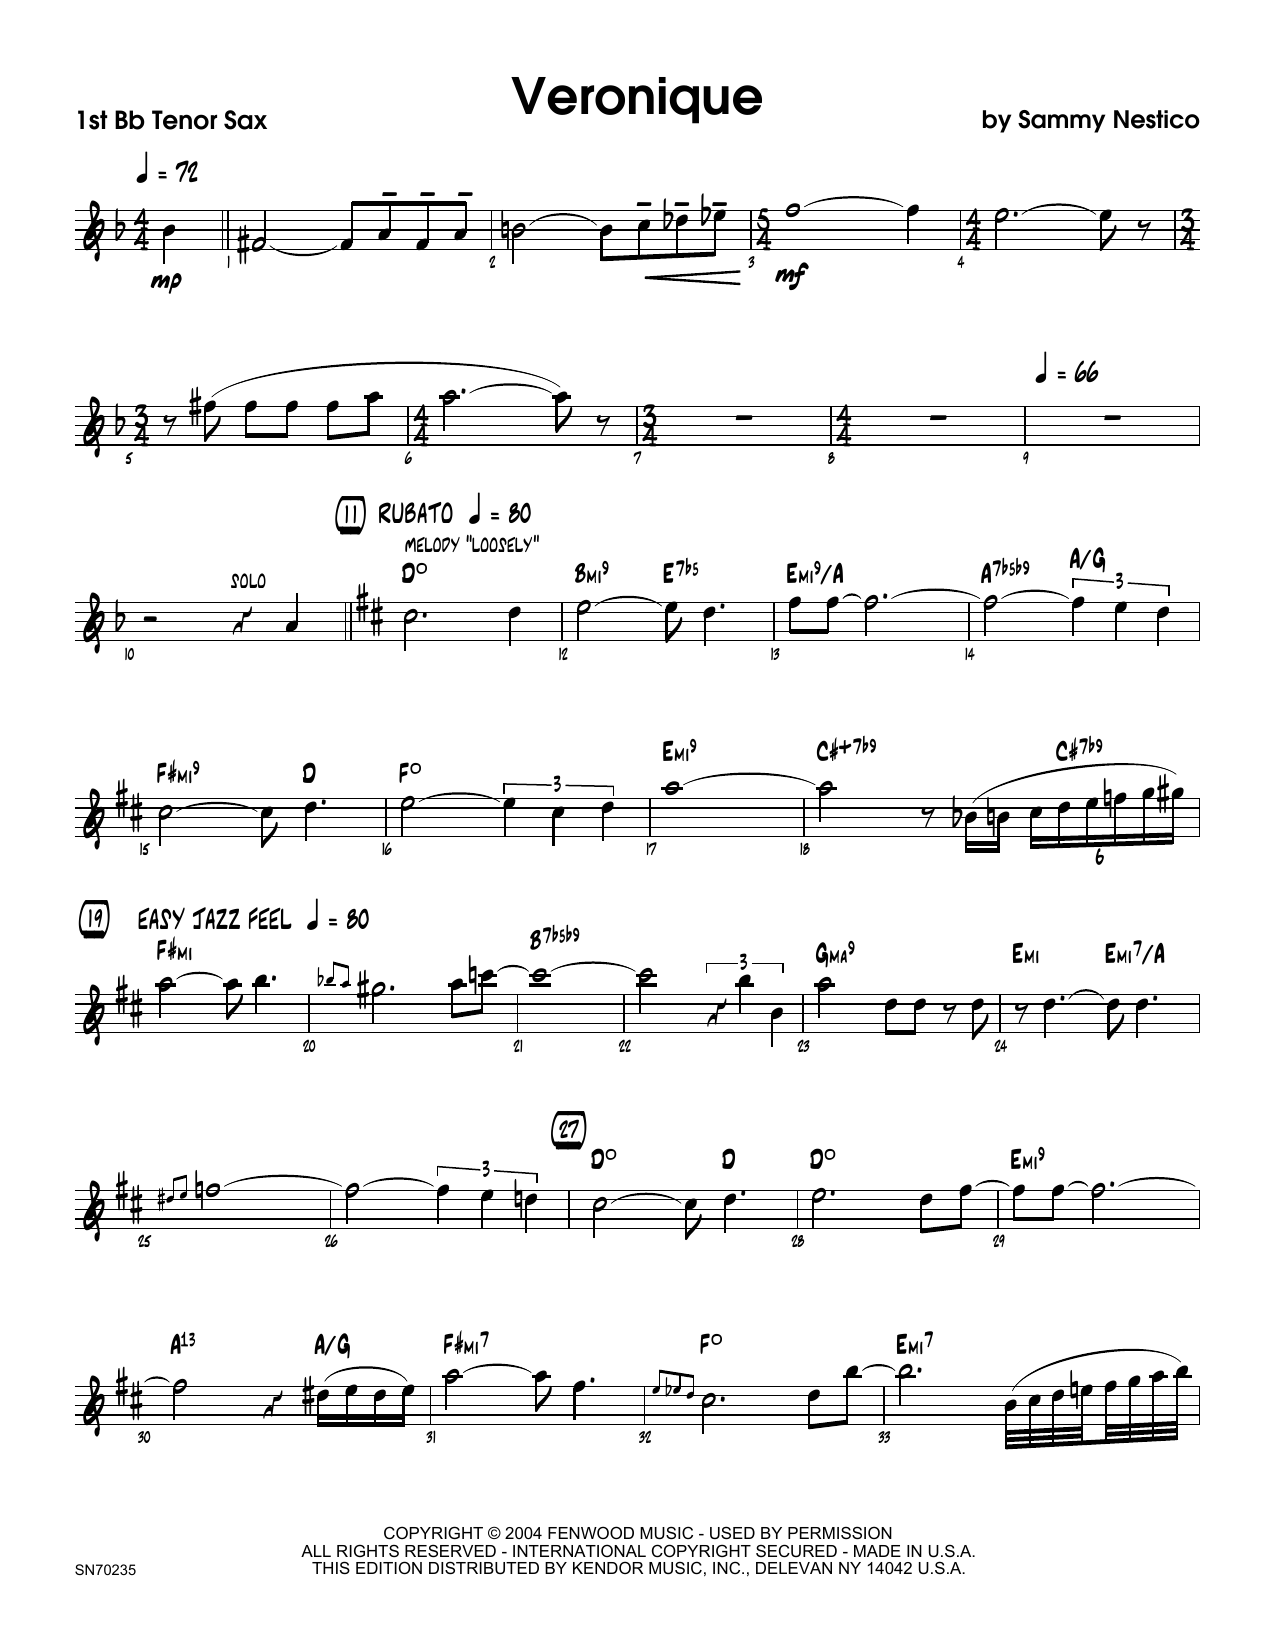 Download Sammy Nestico Veronique - 1st Tenor Saxophone Sheet Music